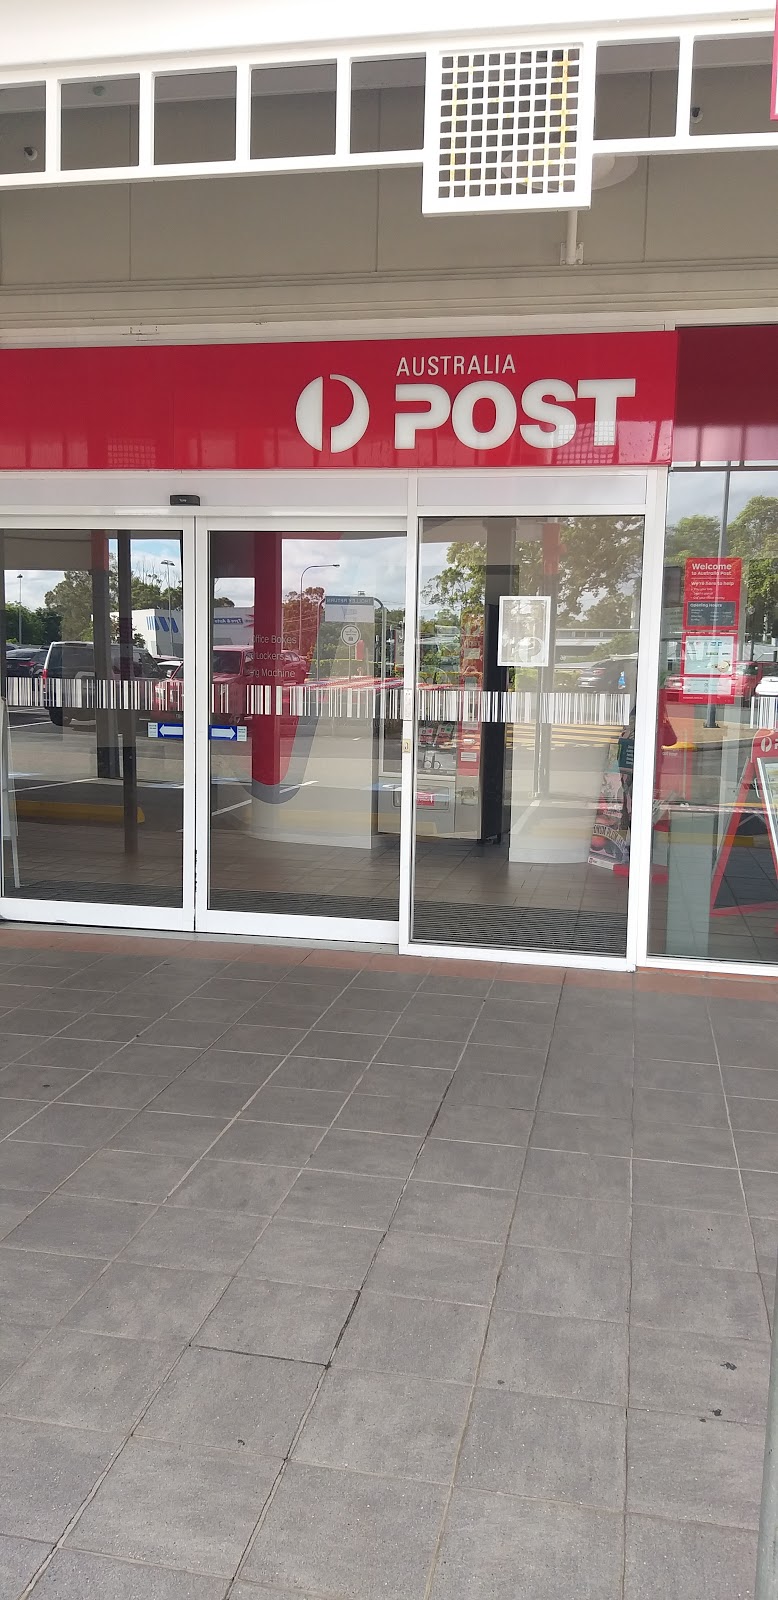 Australia Post - Capalaba Post Shop | post office | Shop 59, Capalaba Park Shopping Centre, 7-45 Redland Bay Rd, Capalaba QLD 4157, Australia | 131318 OR +61 131318